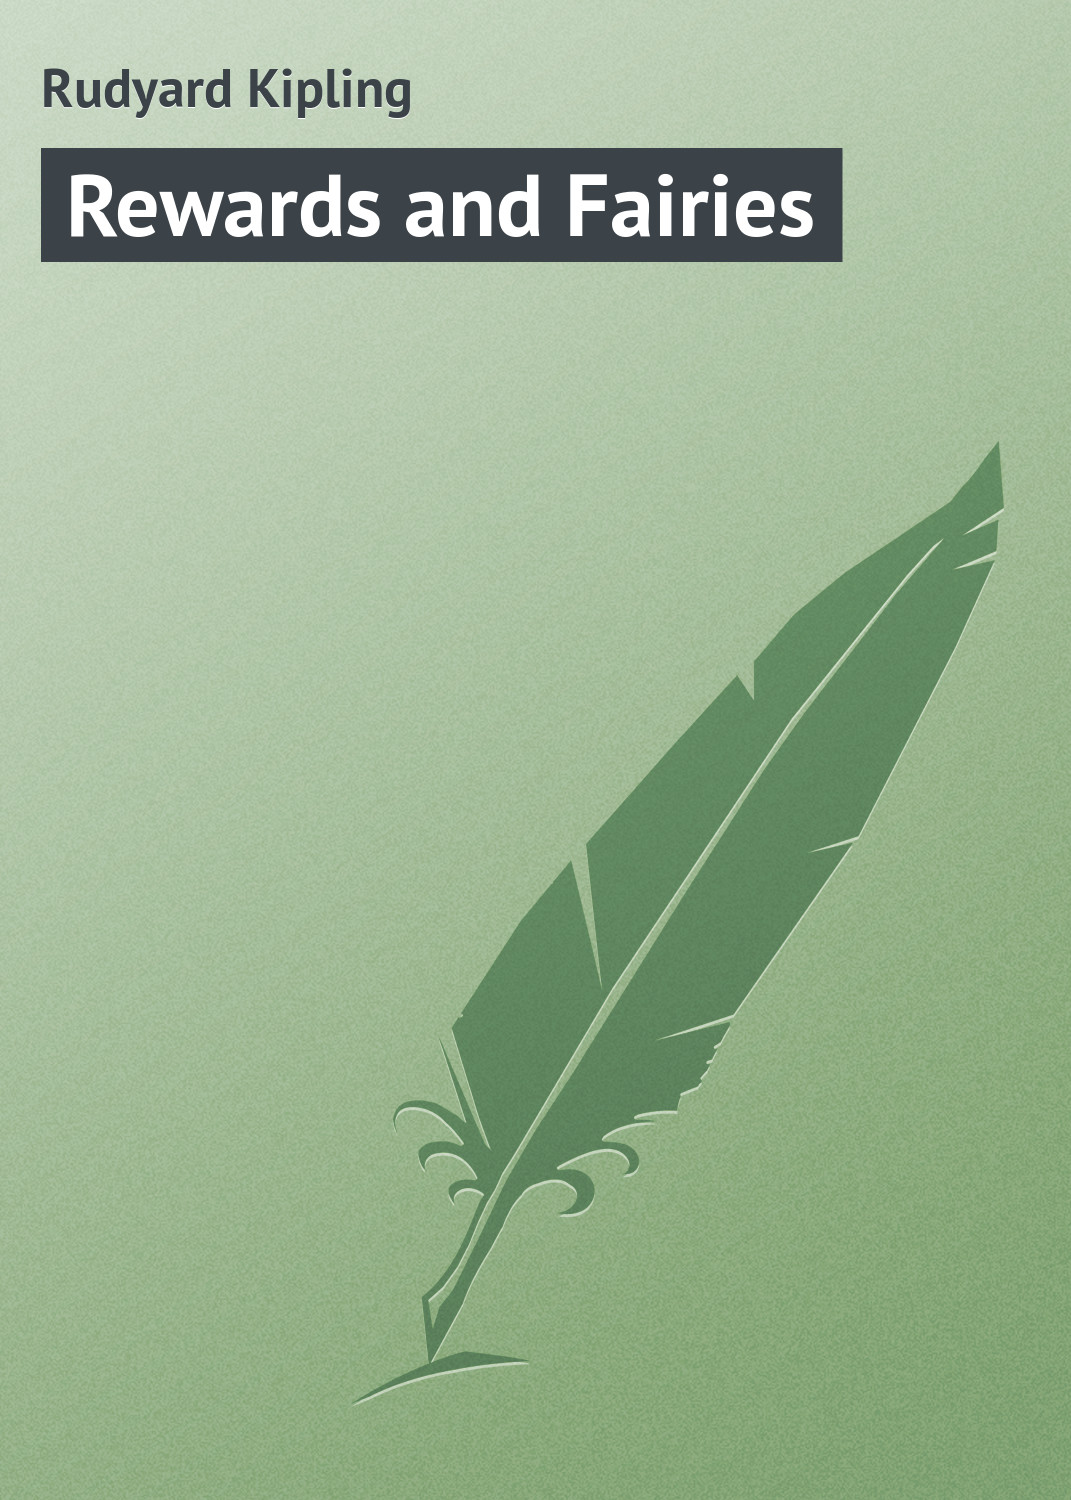 Книга Rewards and Fairies из серии , созданная Rudyard Kipling, может относится к жанру Иностранные языки, Зарубежная классика, Рассказы. Стоимость электронной книги Rewards and Fairies с идентификатором 23295816 составляет 5.99 руб.